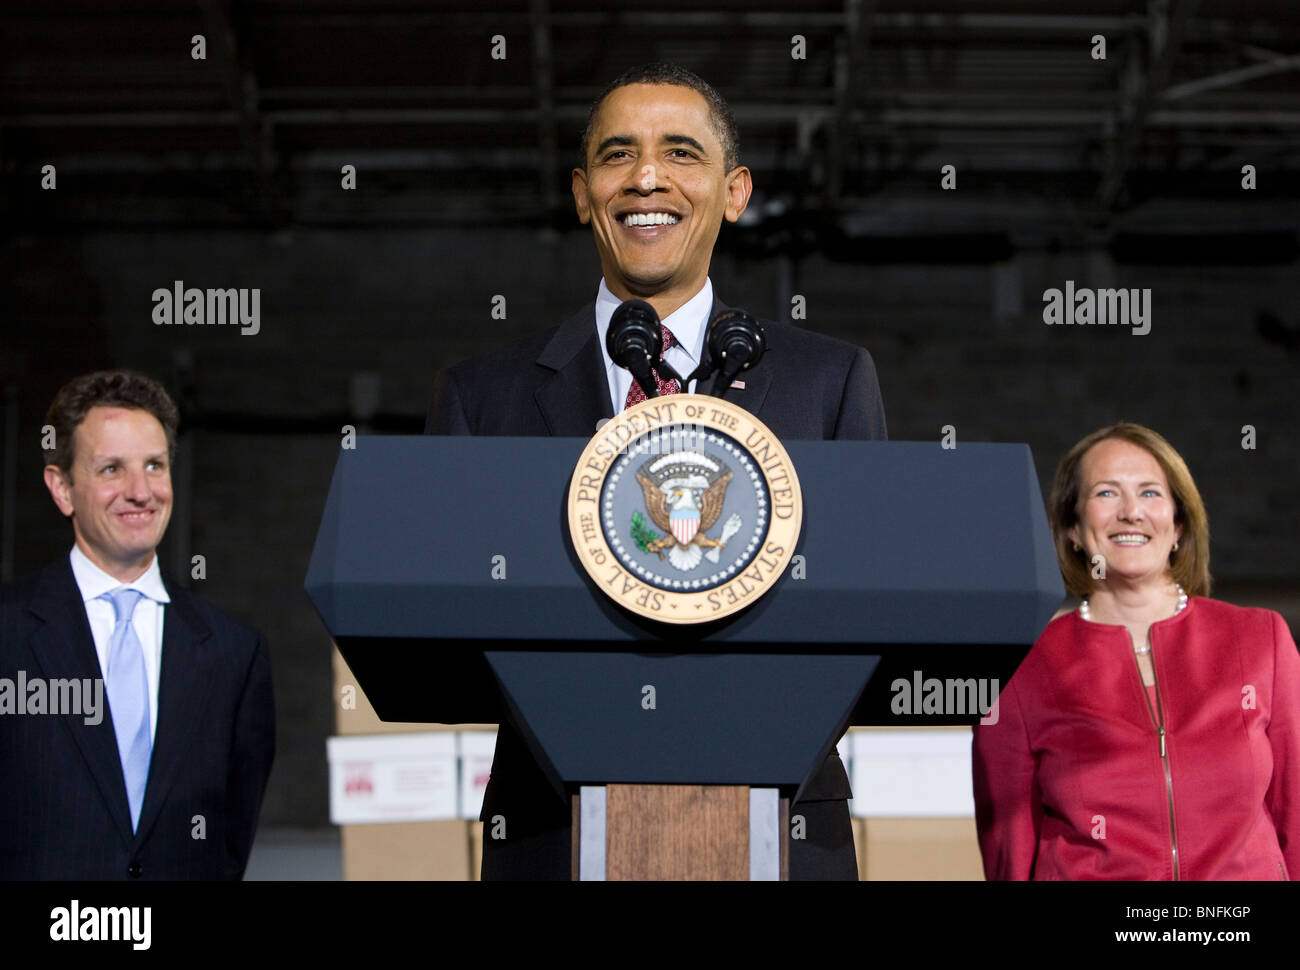 Präsident Barack Obama spricht in einer Lagerhalle für kleine Unternehmen zu fördern. Stockfoto